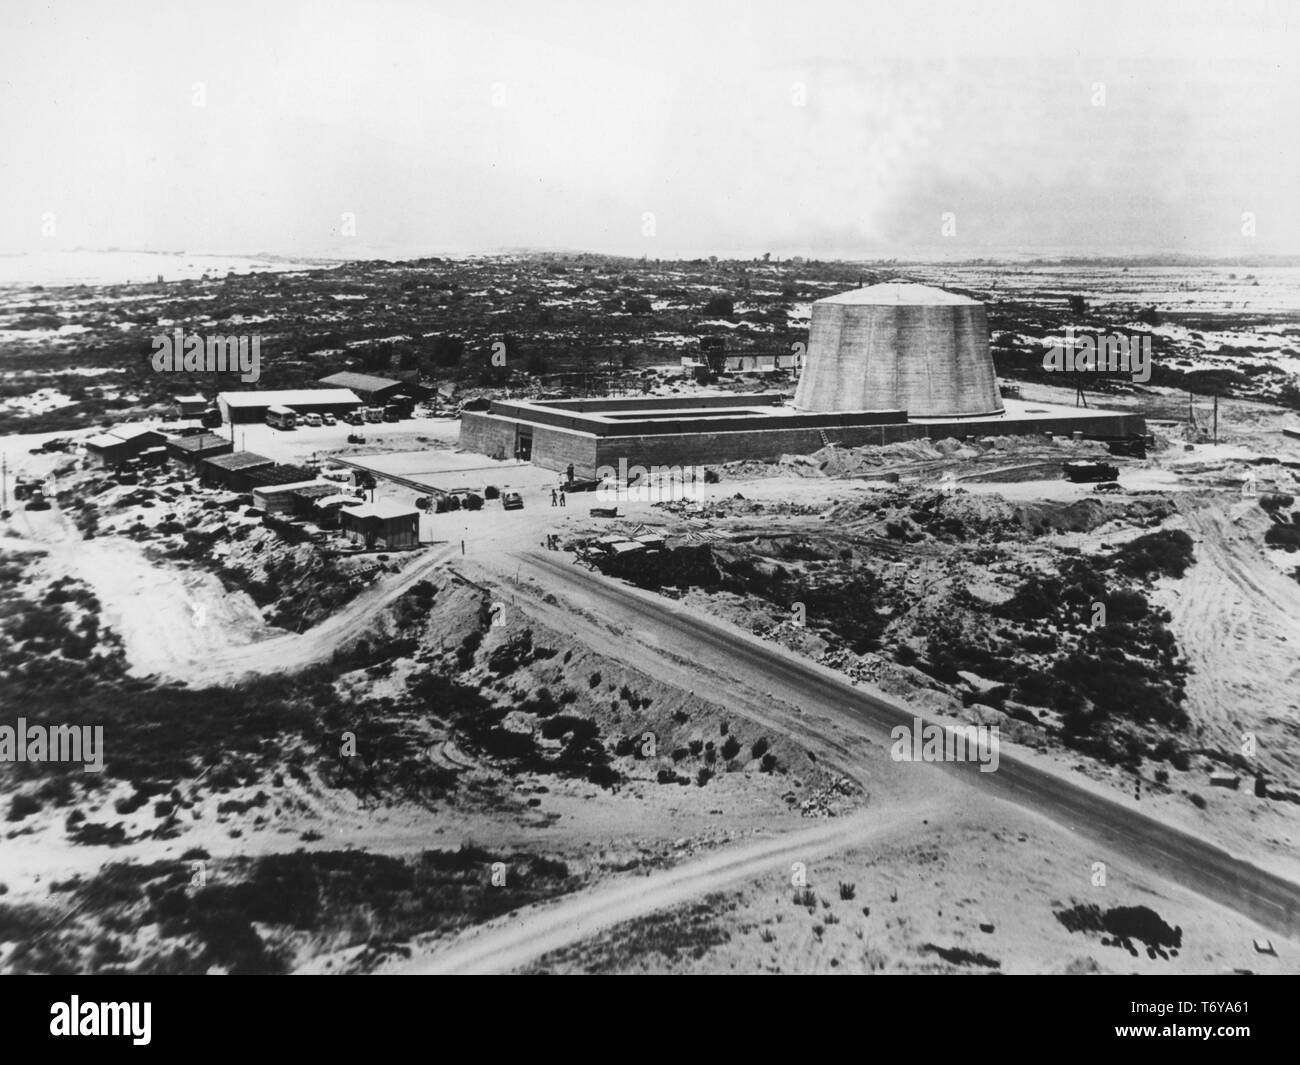 Vue aérienne du centre de recherche nucléaire Soreq, Yavne, Israël, 1960. Image courtoisie du département américain de l'énergie. () Banque D'Images